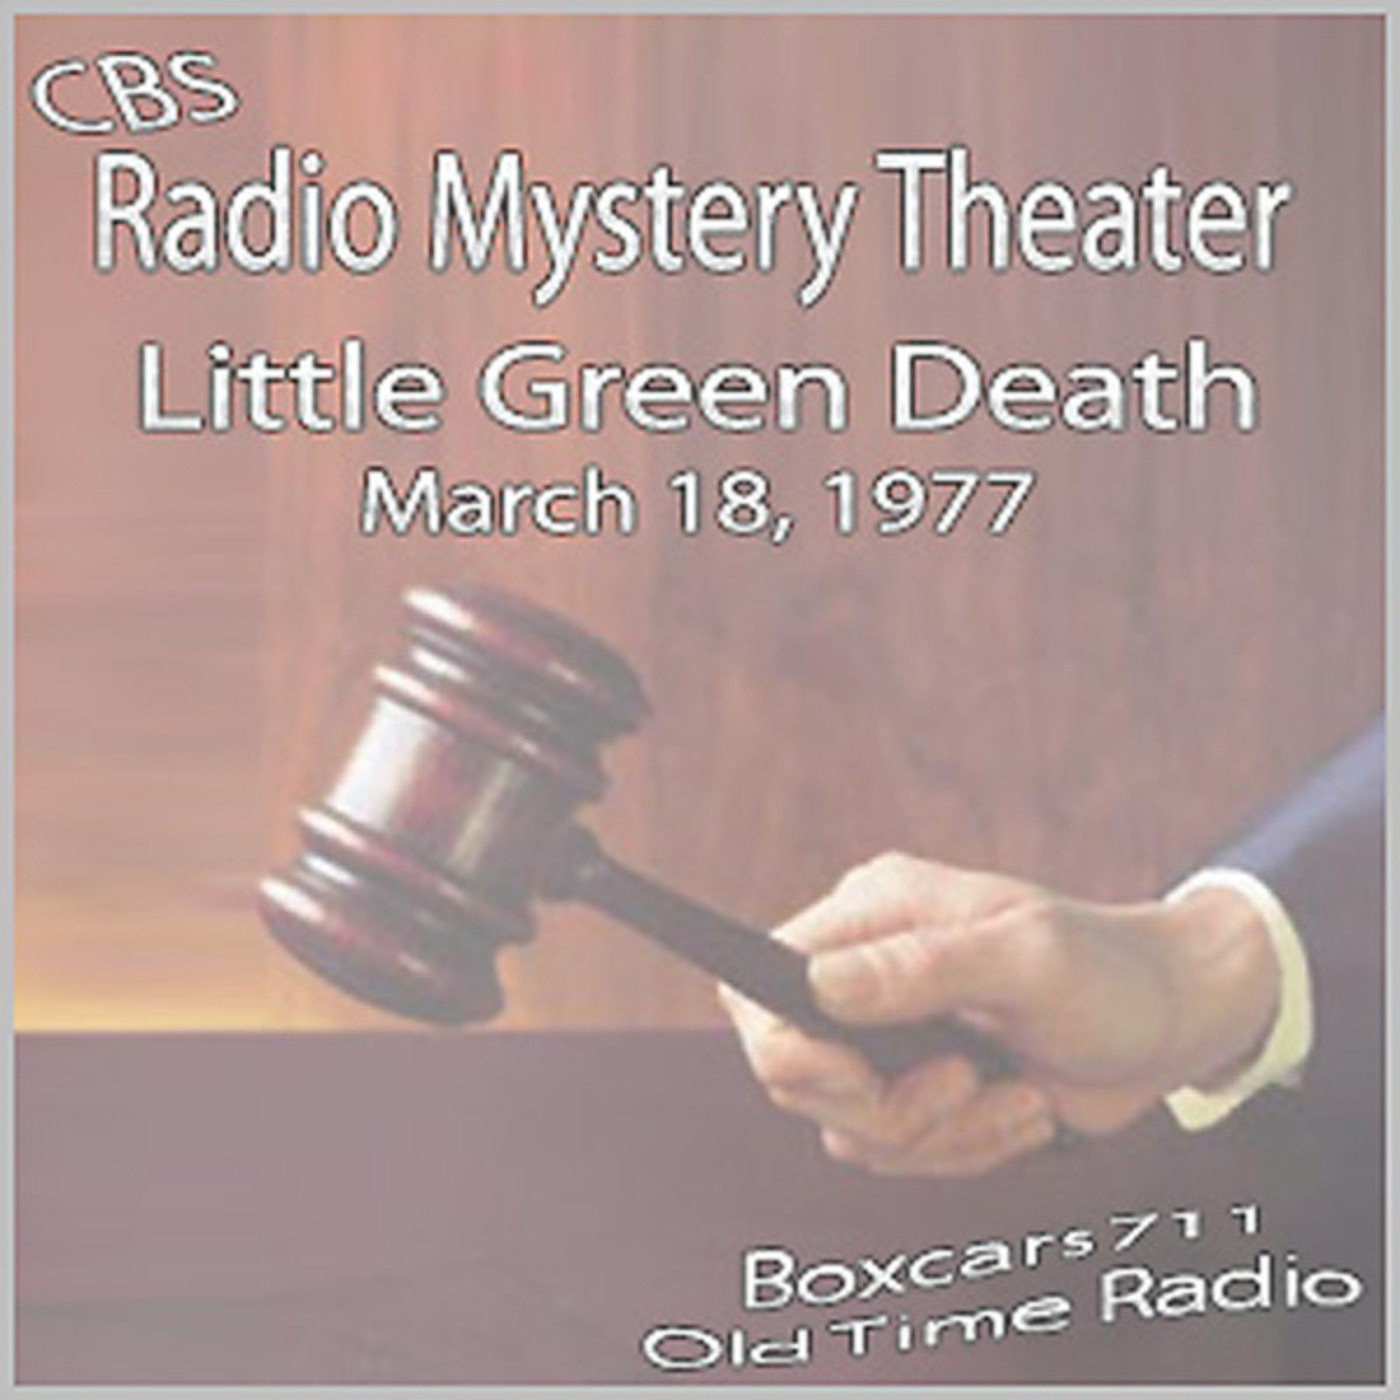 Episode 9613: CBS Radio Mystery Theater 